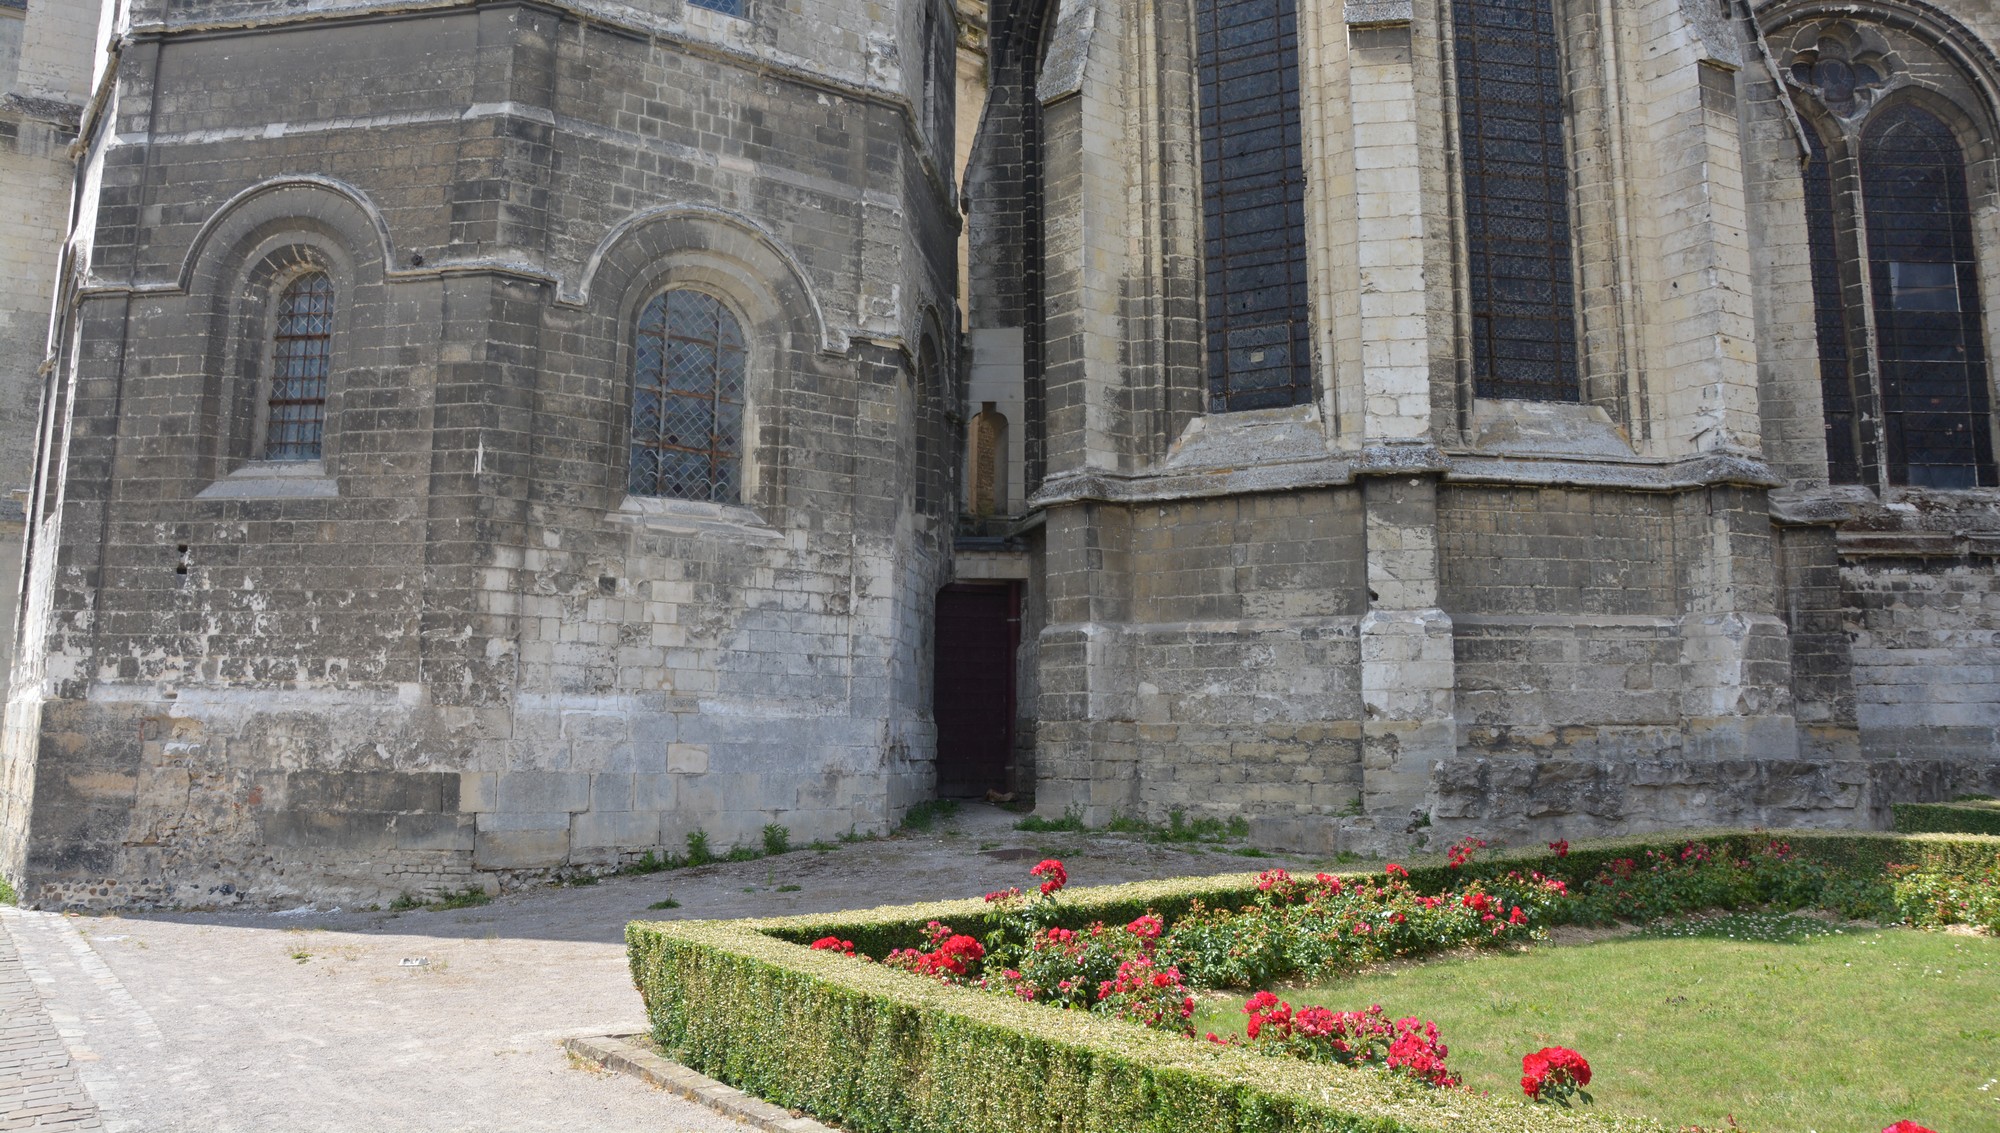 Cathédrale de Saint-Omer| Tour Octogonale